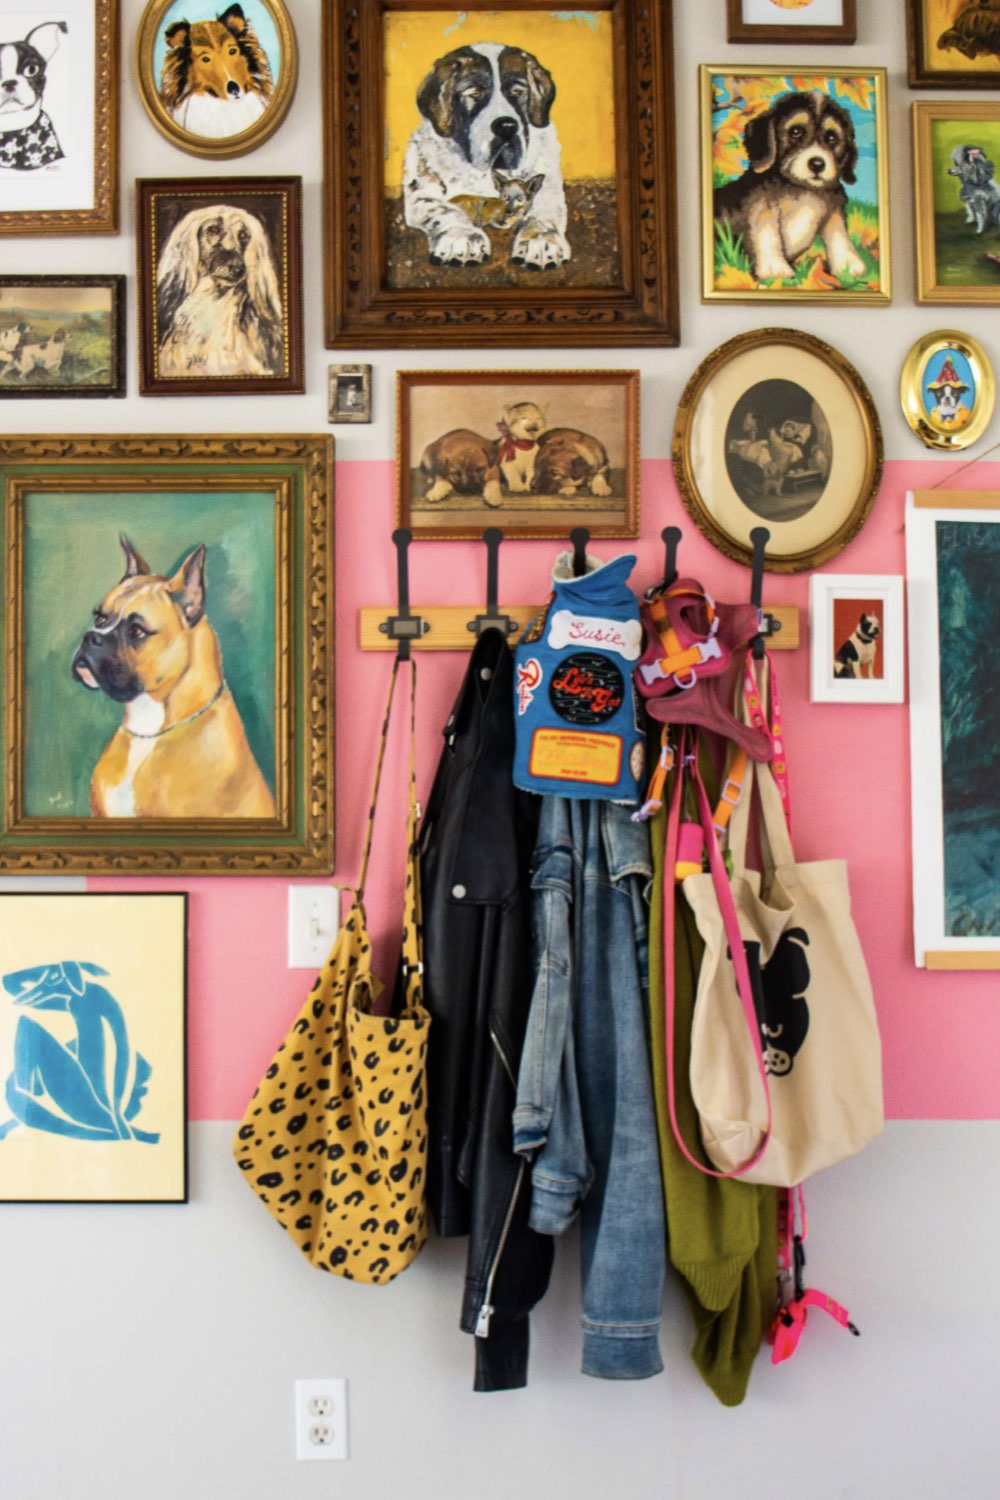 decoration interieur personnelle et coloree bande de peinture rose déco murale originale galerie portrait de chiens